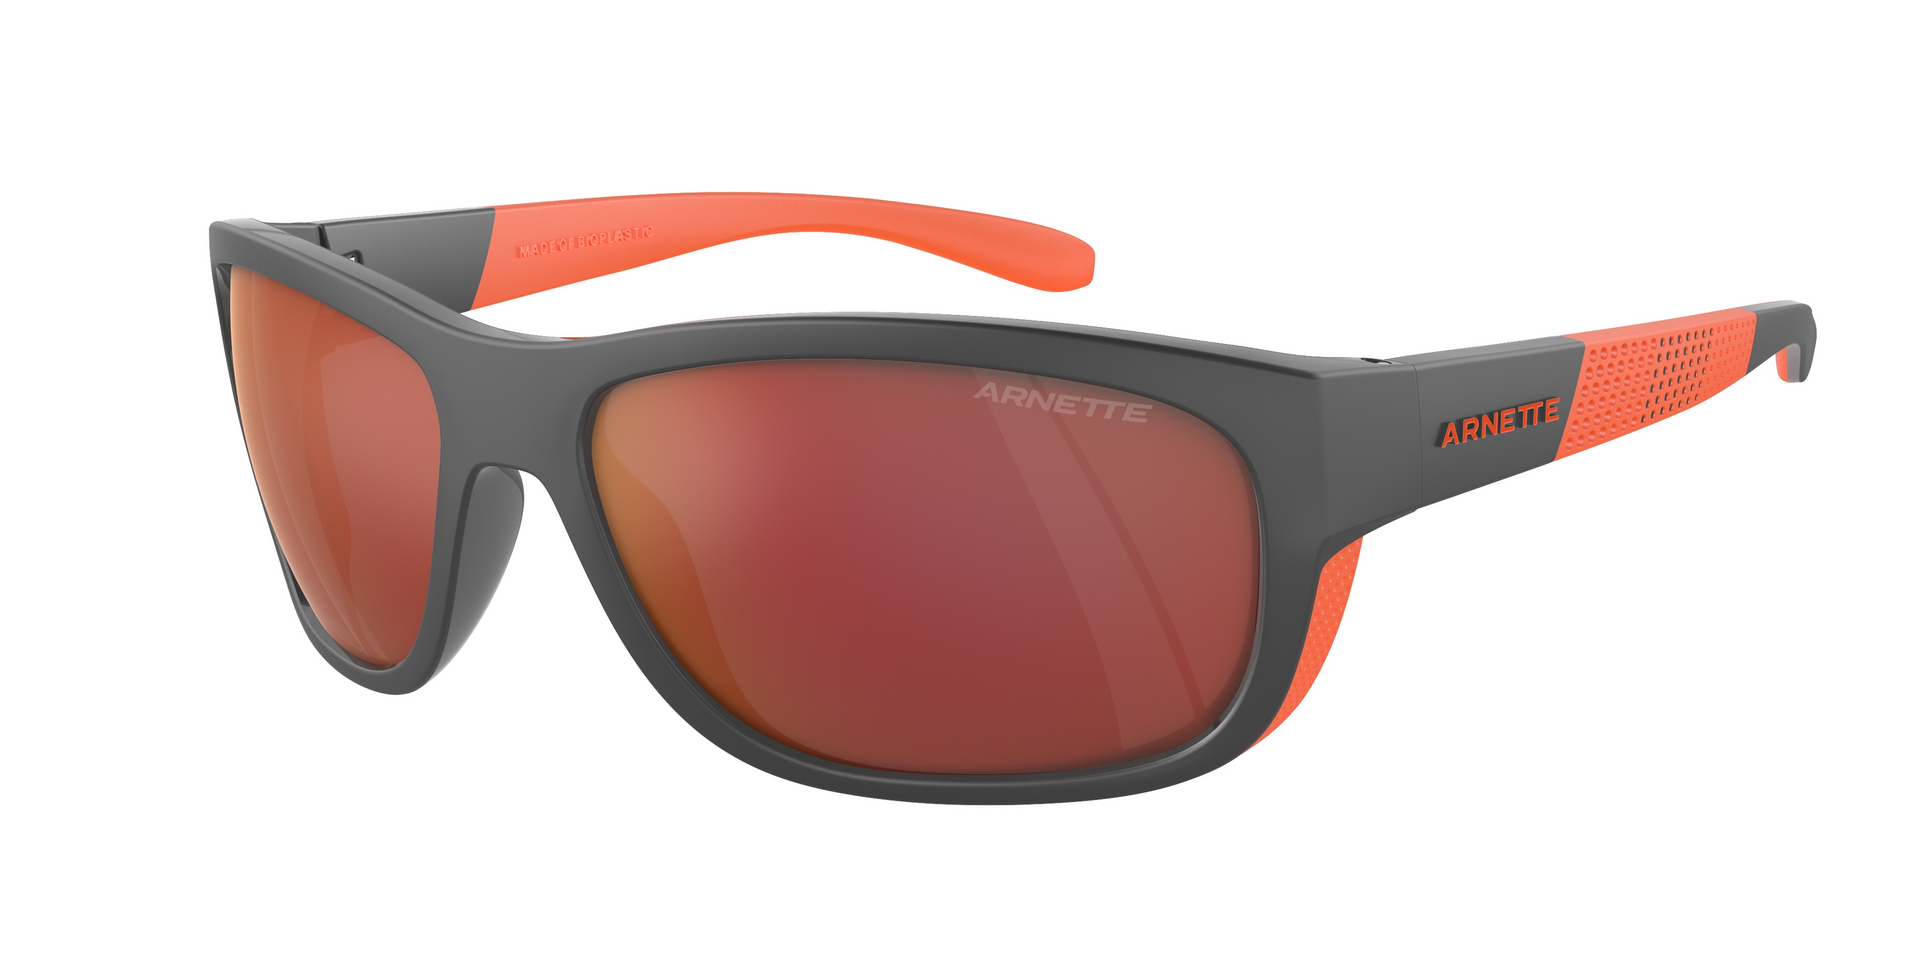 Das Bild zeigt die Sonnenbrille AN4337 28706Q von der Marke Arnette in grau/orange.